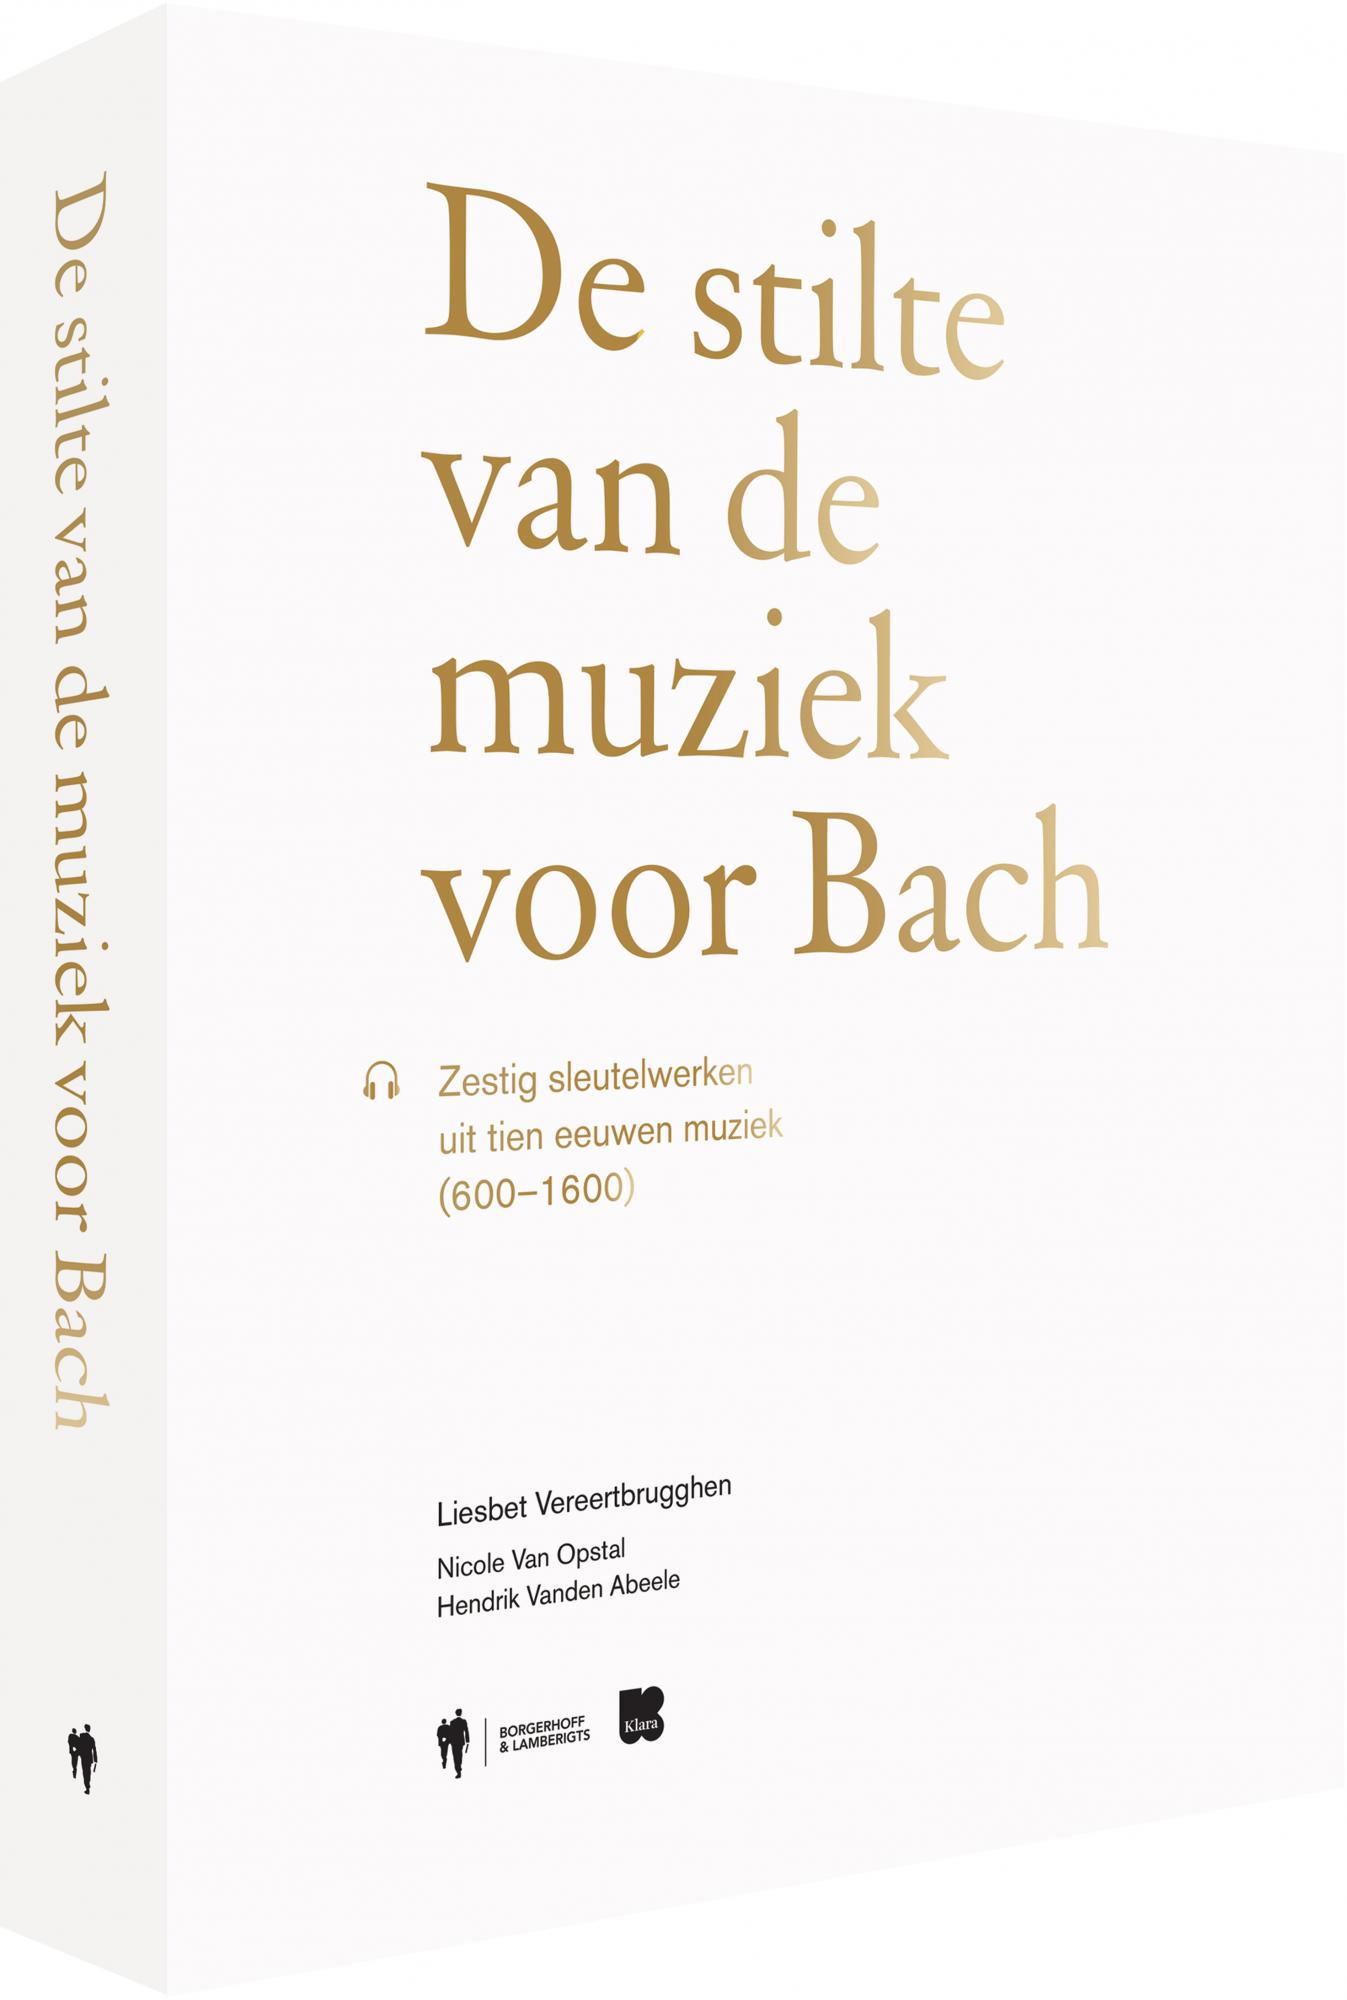 'De stilte van de muziek voor Bach', Liesbet Vereertbrugghen.